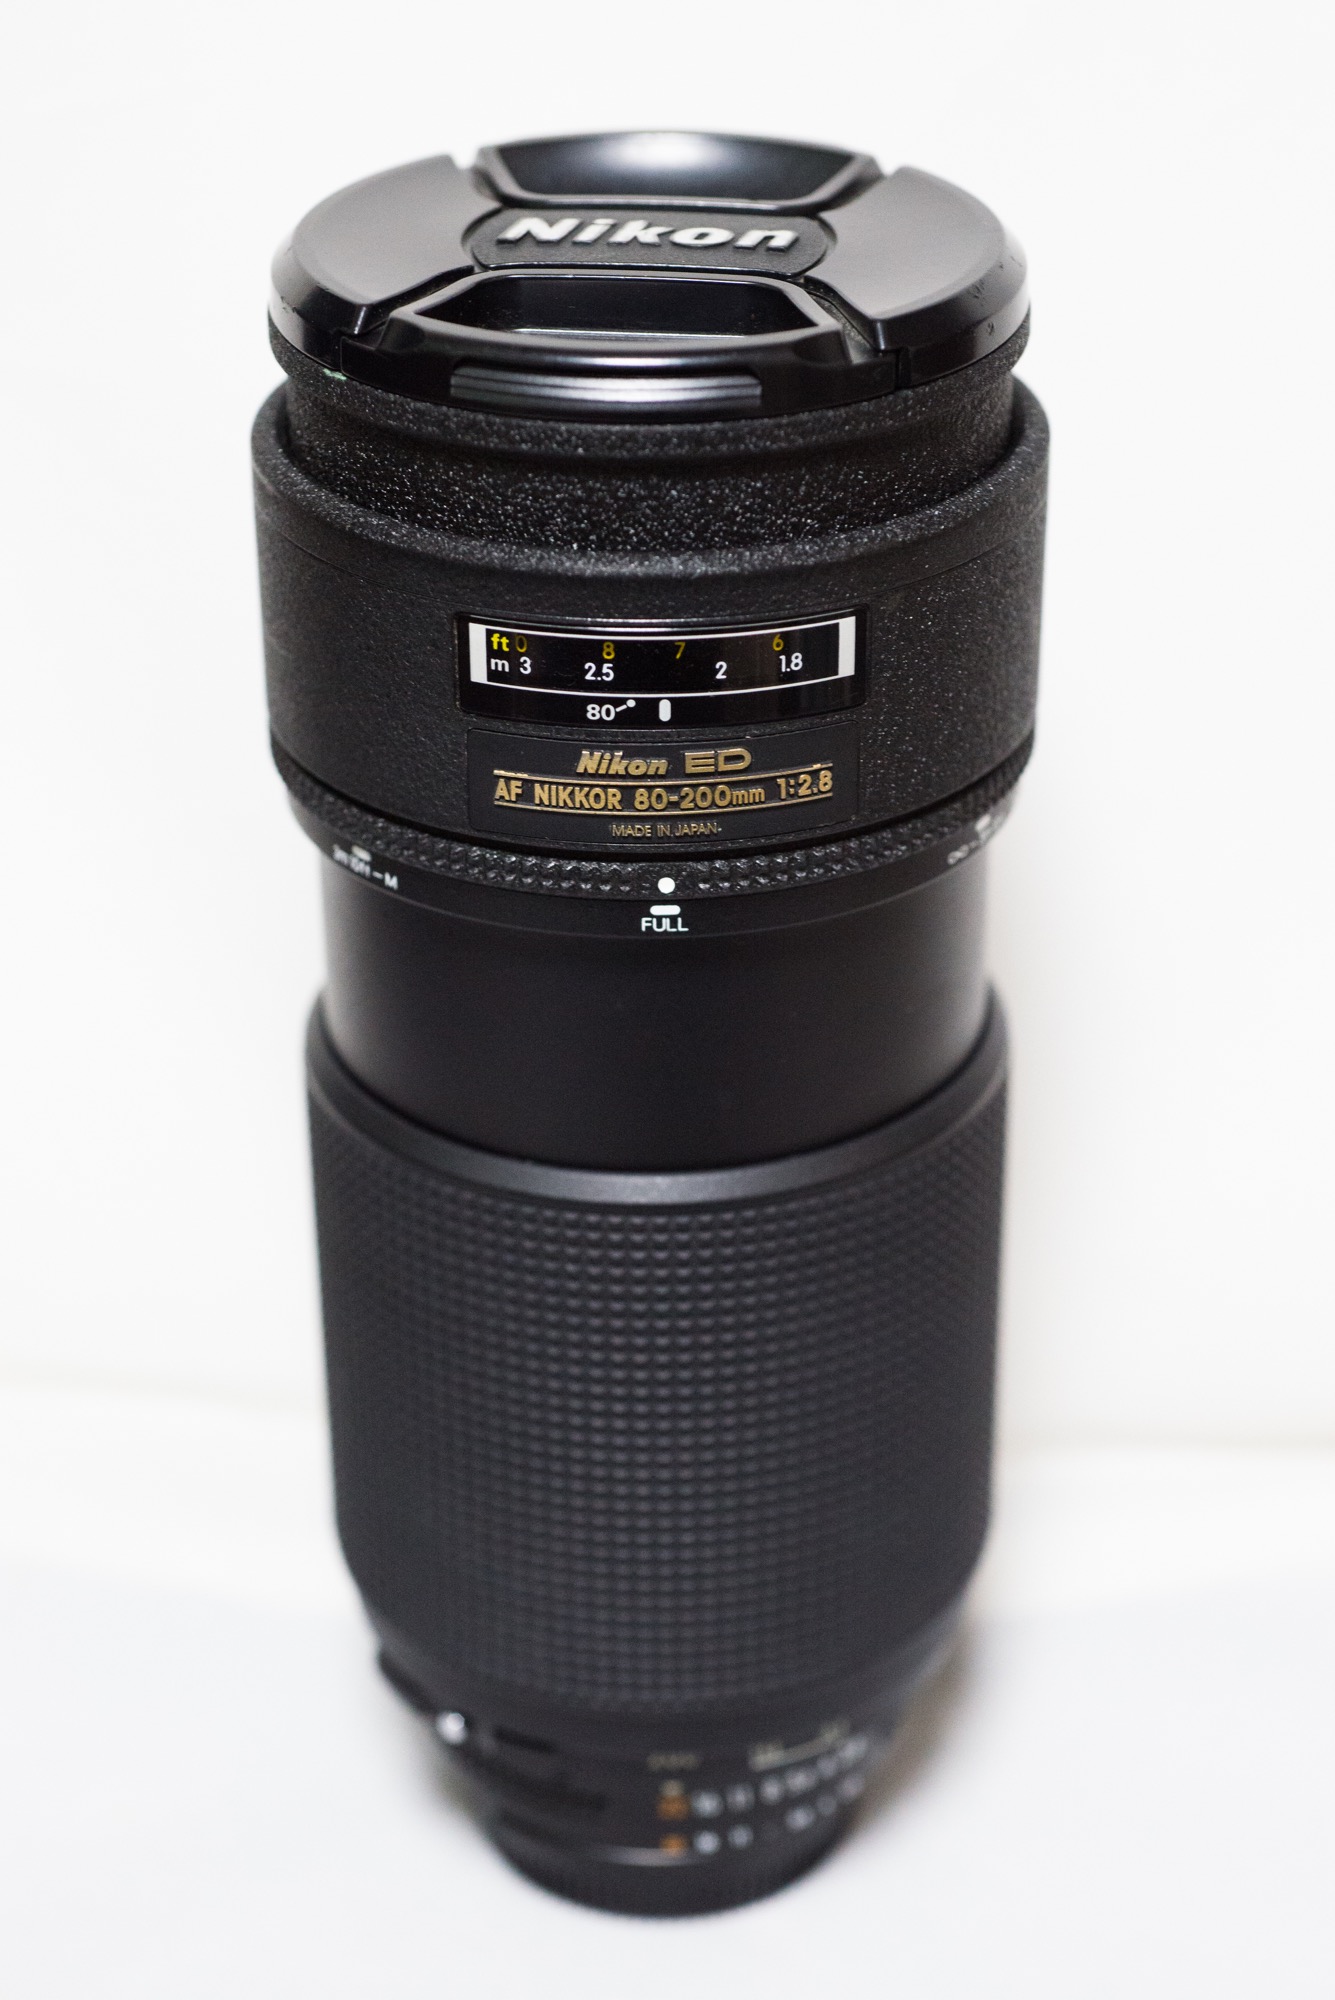 カメラ レンズ(ズーム) AF Nikkor ED 80-200mm F2.8 | MacBSの日常生活的日記